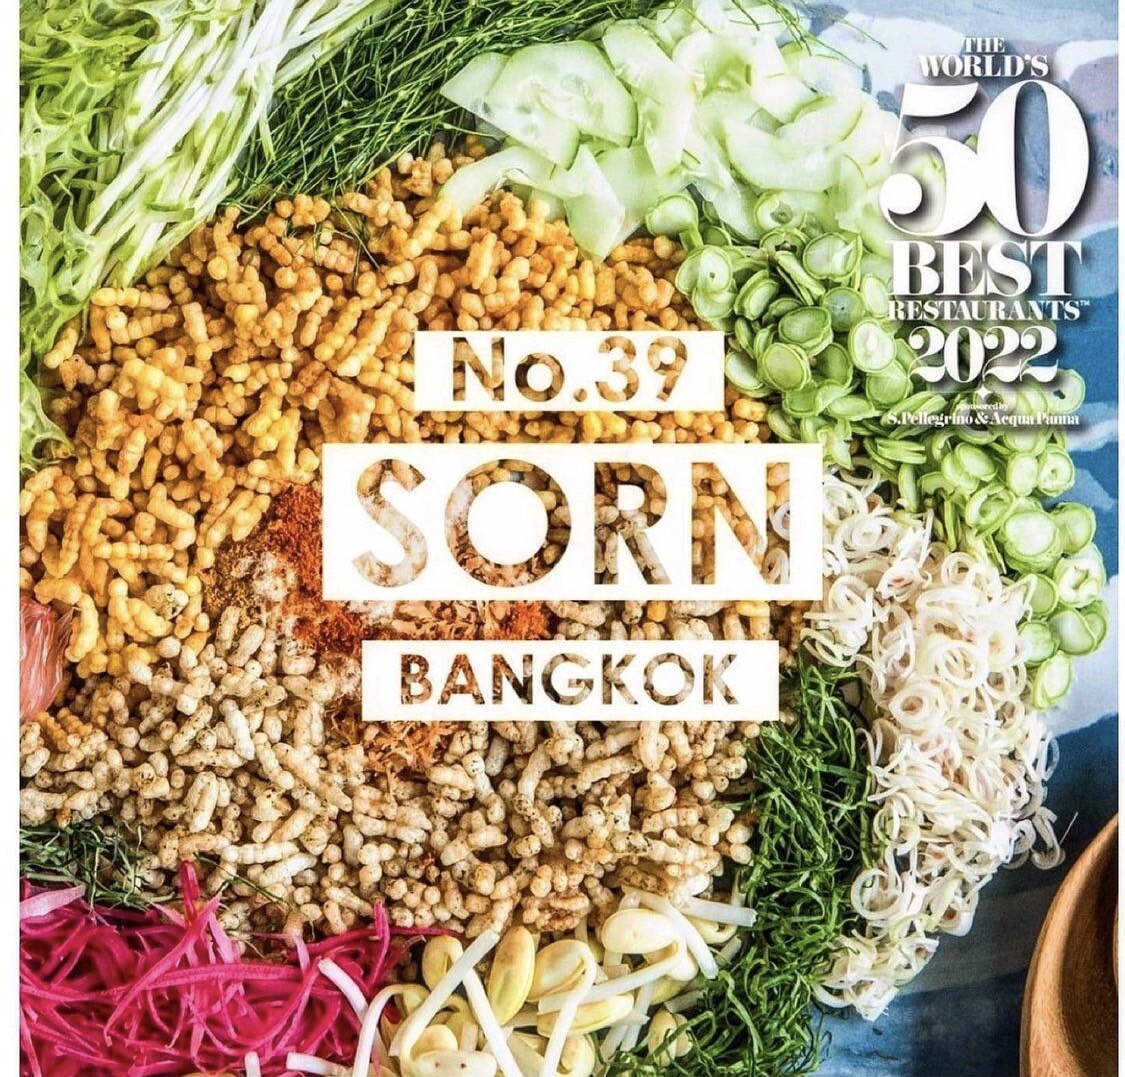 สุดยอด!! "ศรณ์ (SORN)" ร้านอาหารปักษ์ใต้ คนไทยคนแรกในประวัติศาสตร์ 20 ปี ของ "The World's 50 Best Restaurants 2022" ที่คว้าอันดับที่ 39